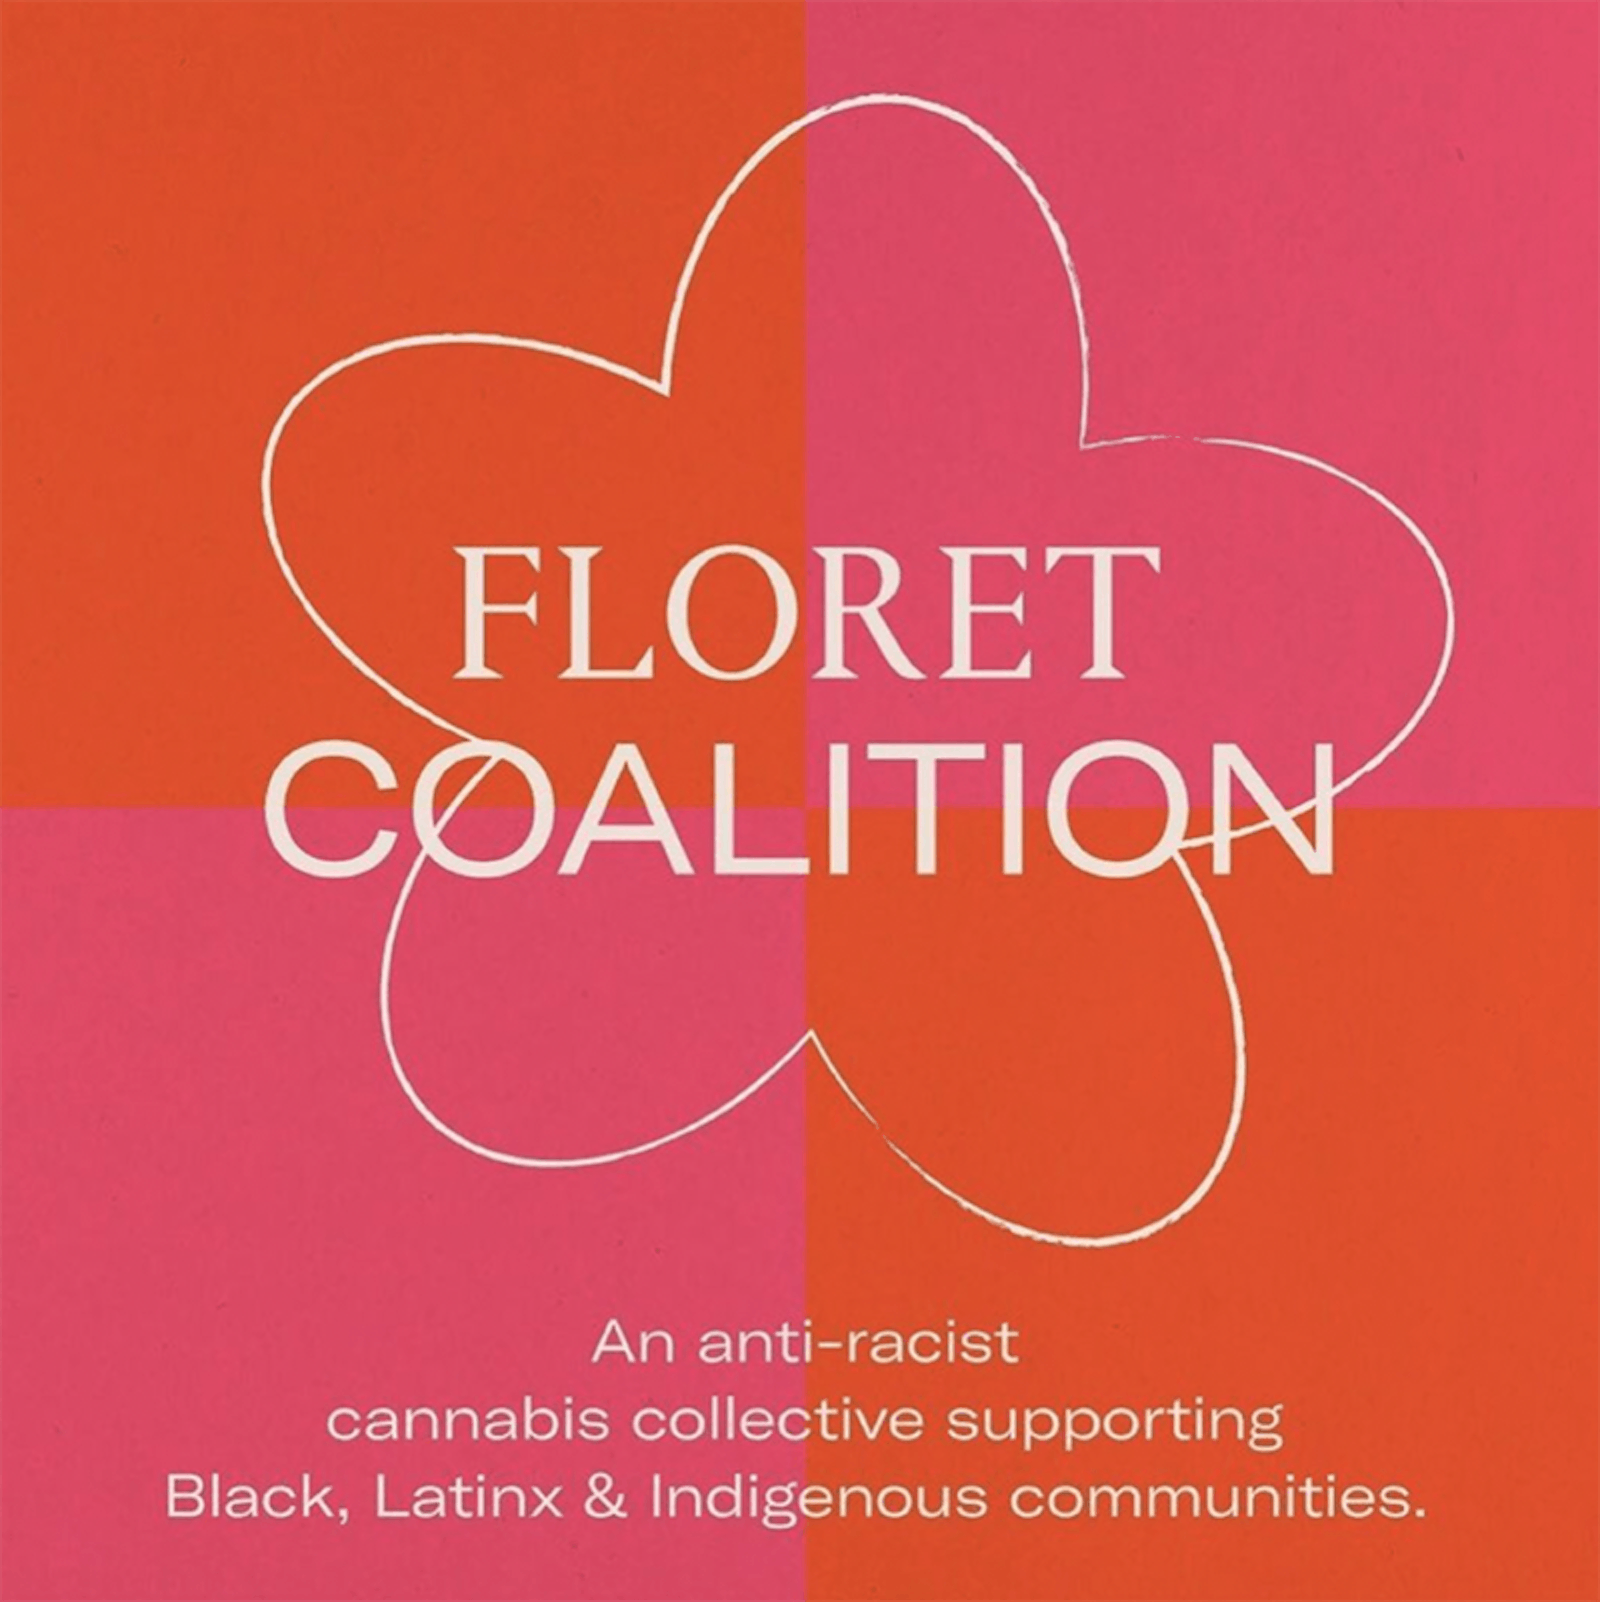 The Floret Coalition